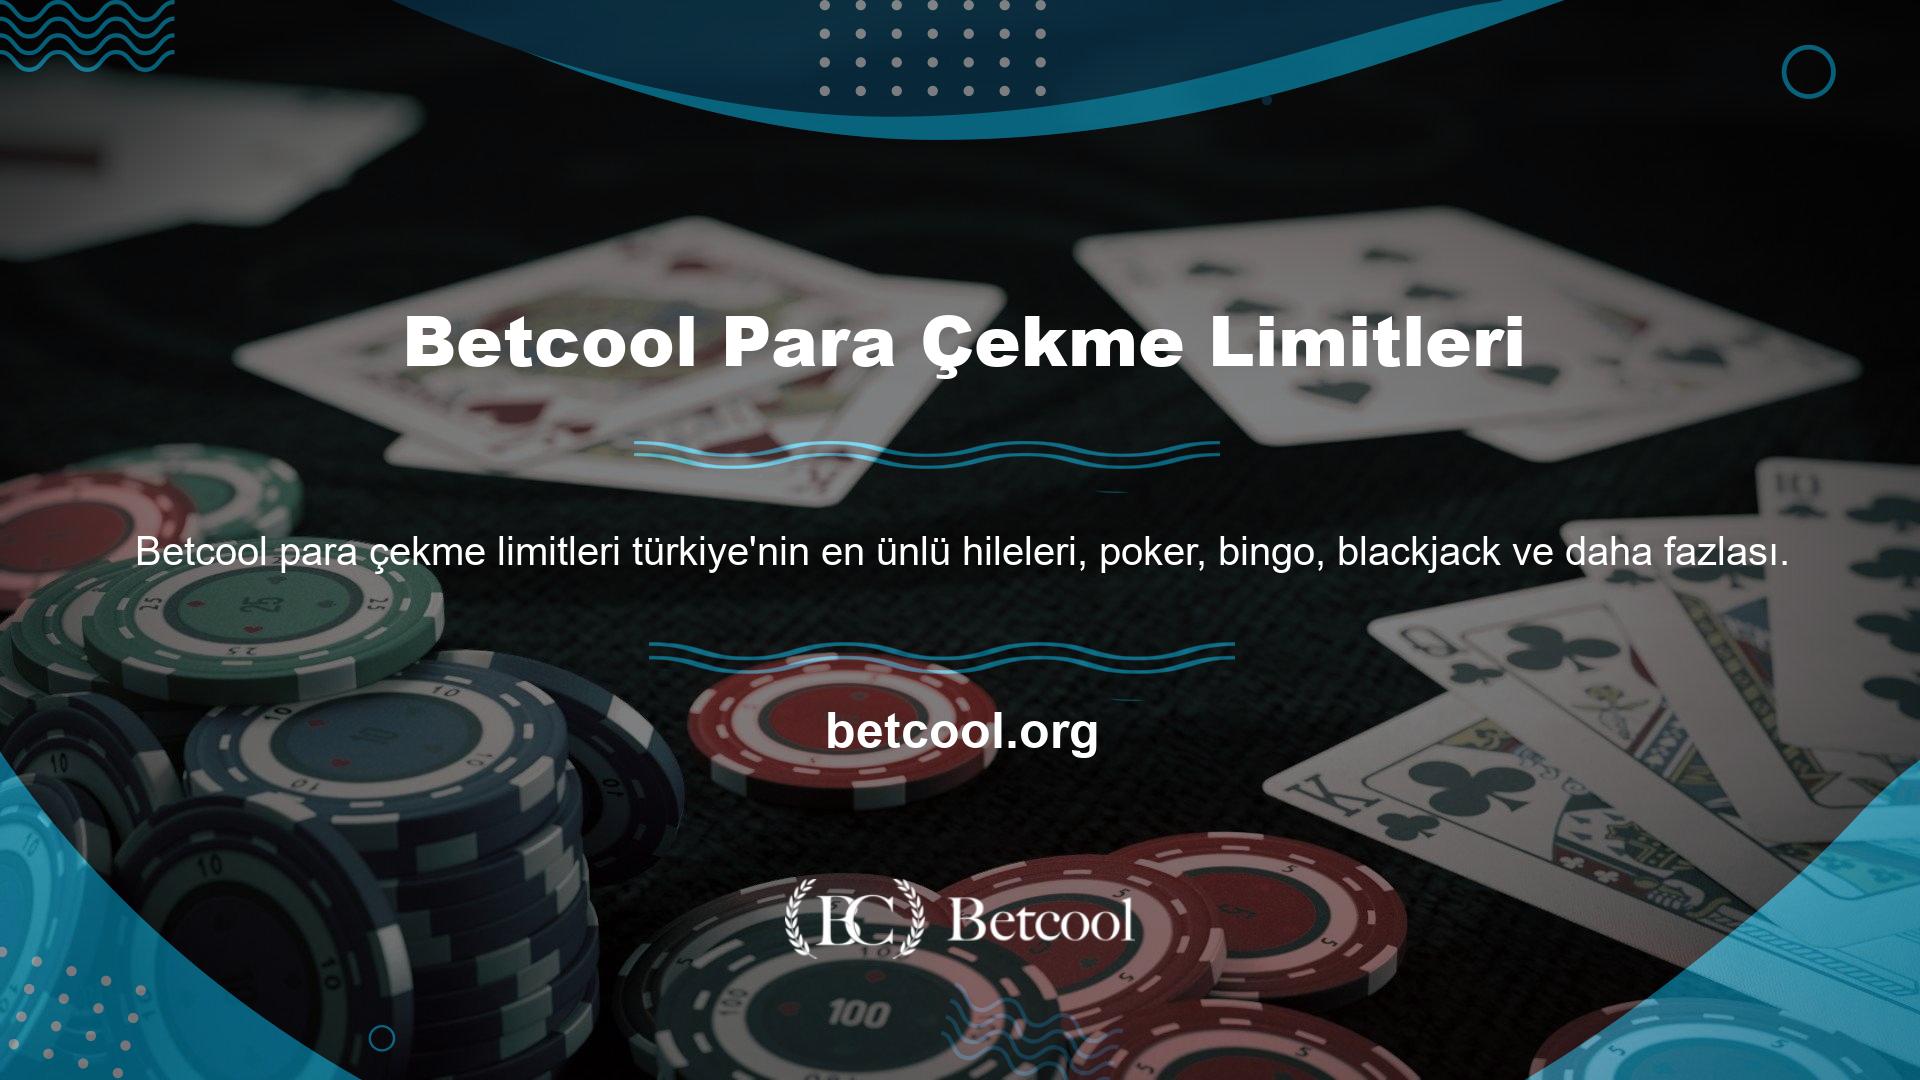 Yüksek kaliteli bir masa oyunu adresi olarak Betcool, çok yüksek para çekme limitlerini koruyor